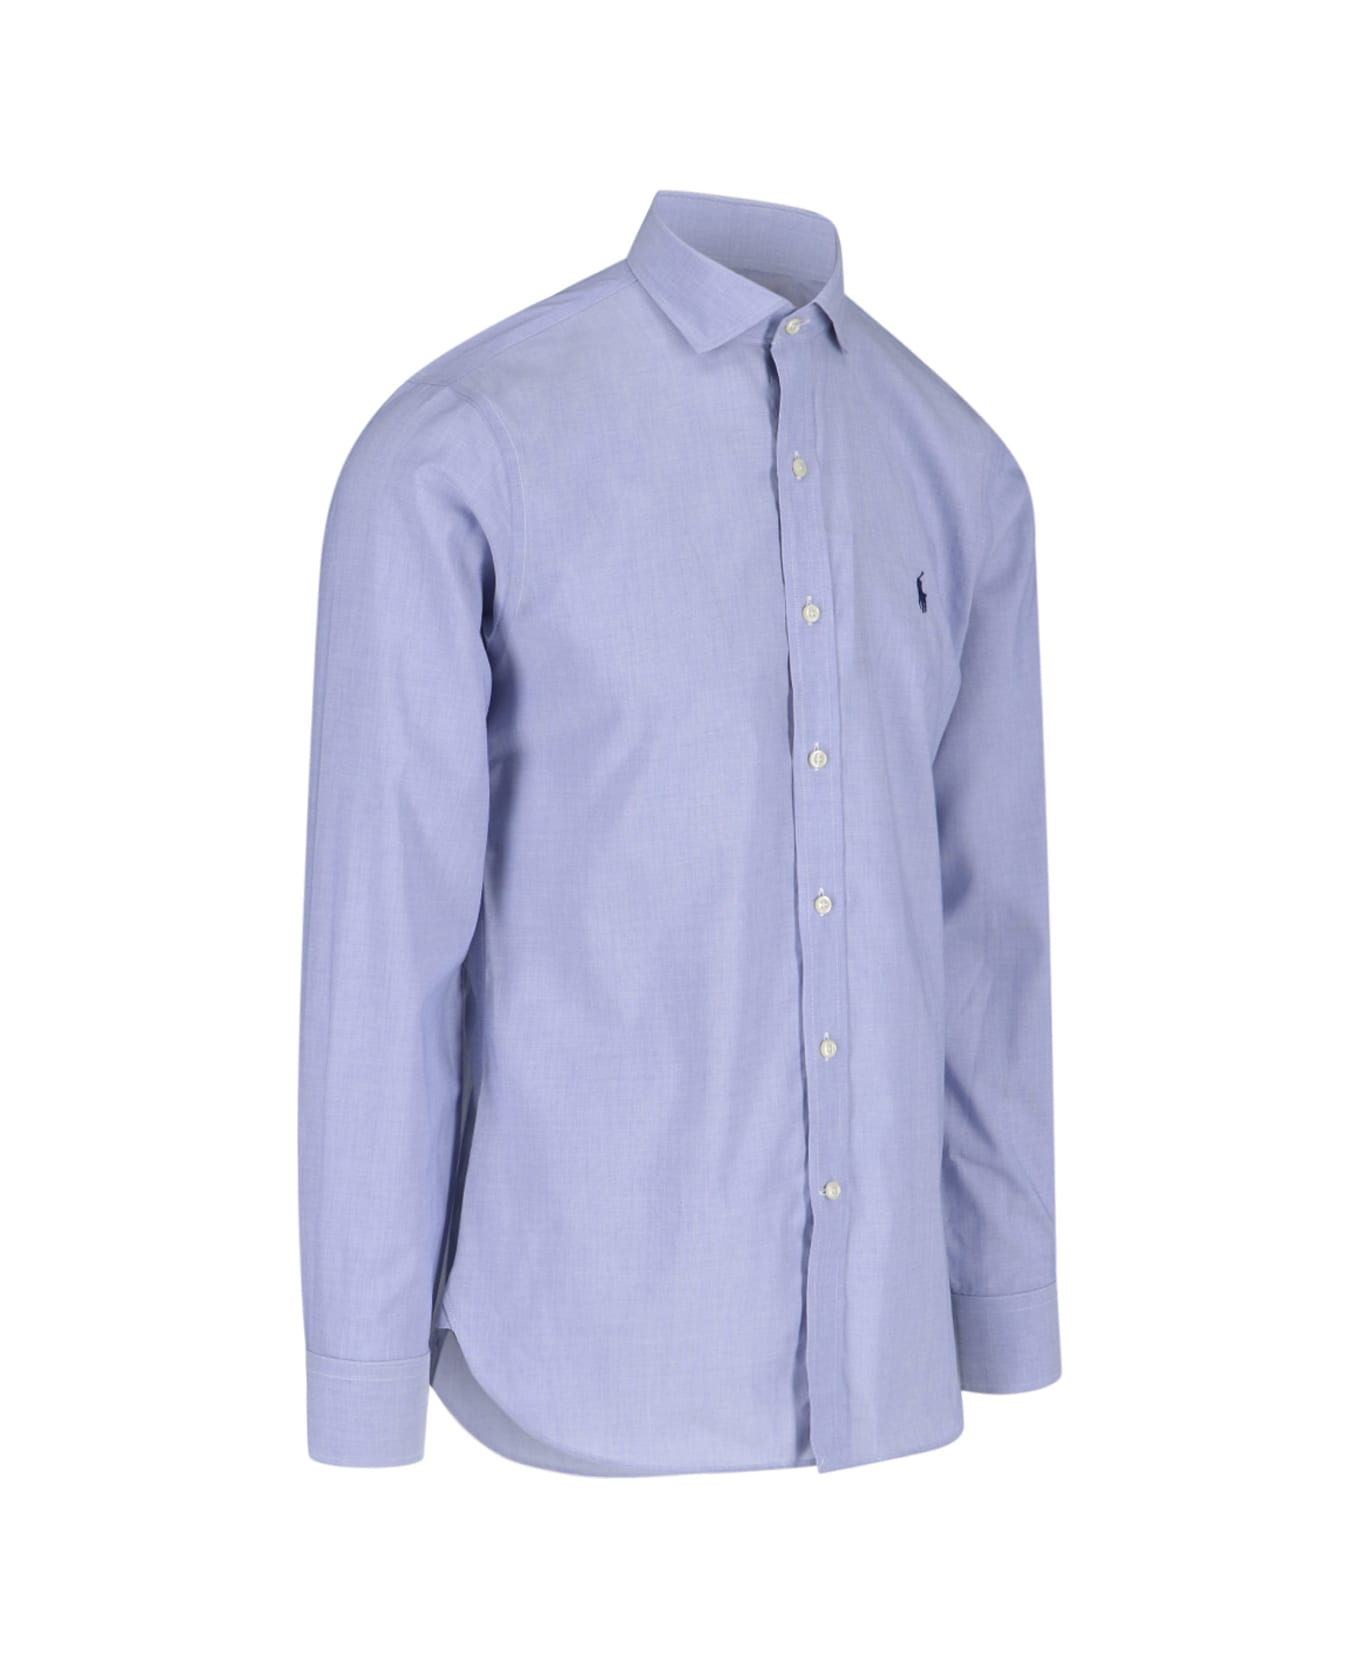 Ralph Lauren Classic Logo Shirt - Light Blue